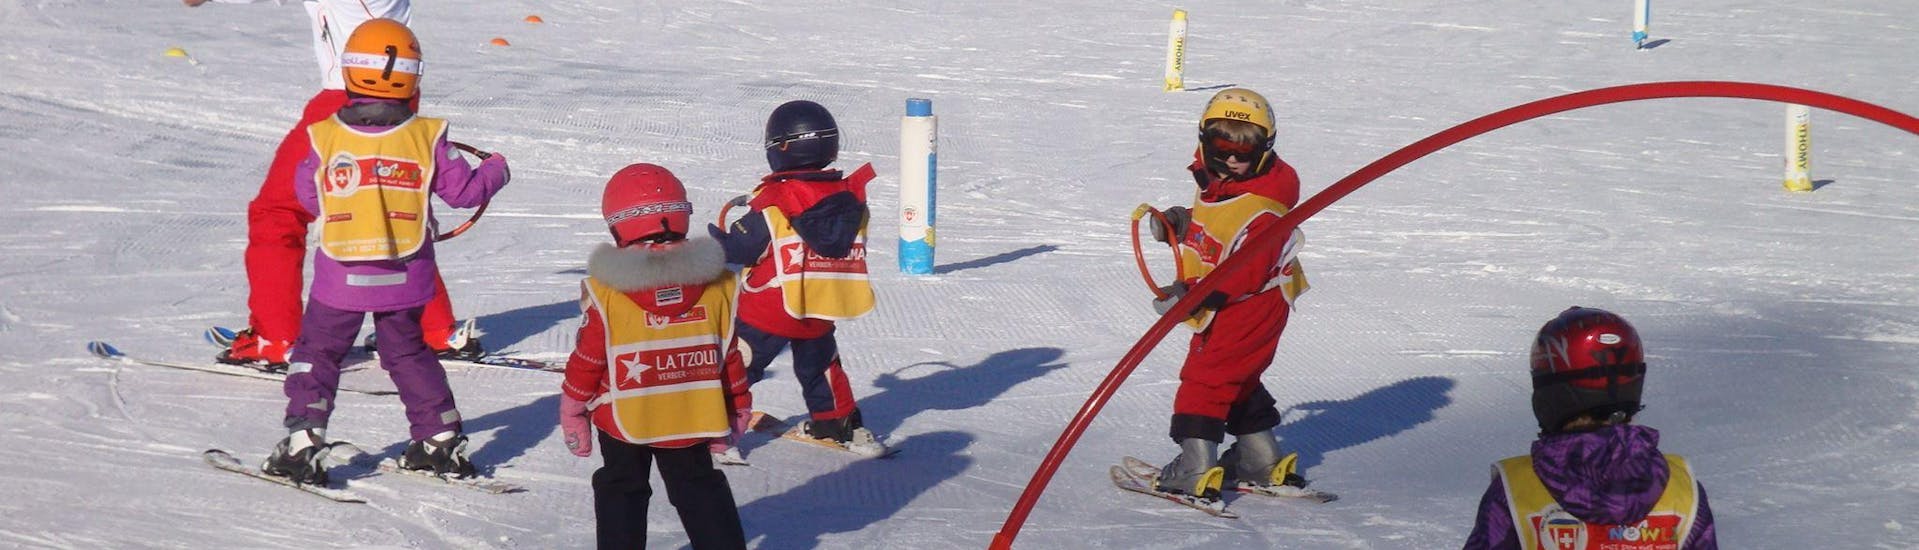 Los niños aprenden los fundamentos del esquí gracias a los juegos en la seguridad del jardín de nieve durante sus Clases de esquí para niños "Snowgarden" (3-6 años) - Mañana con la Escuela Suiza de Esquí La Tzoumaz.